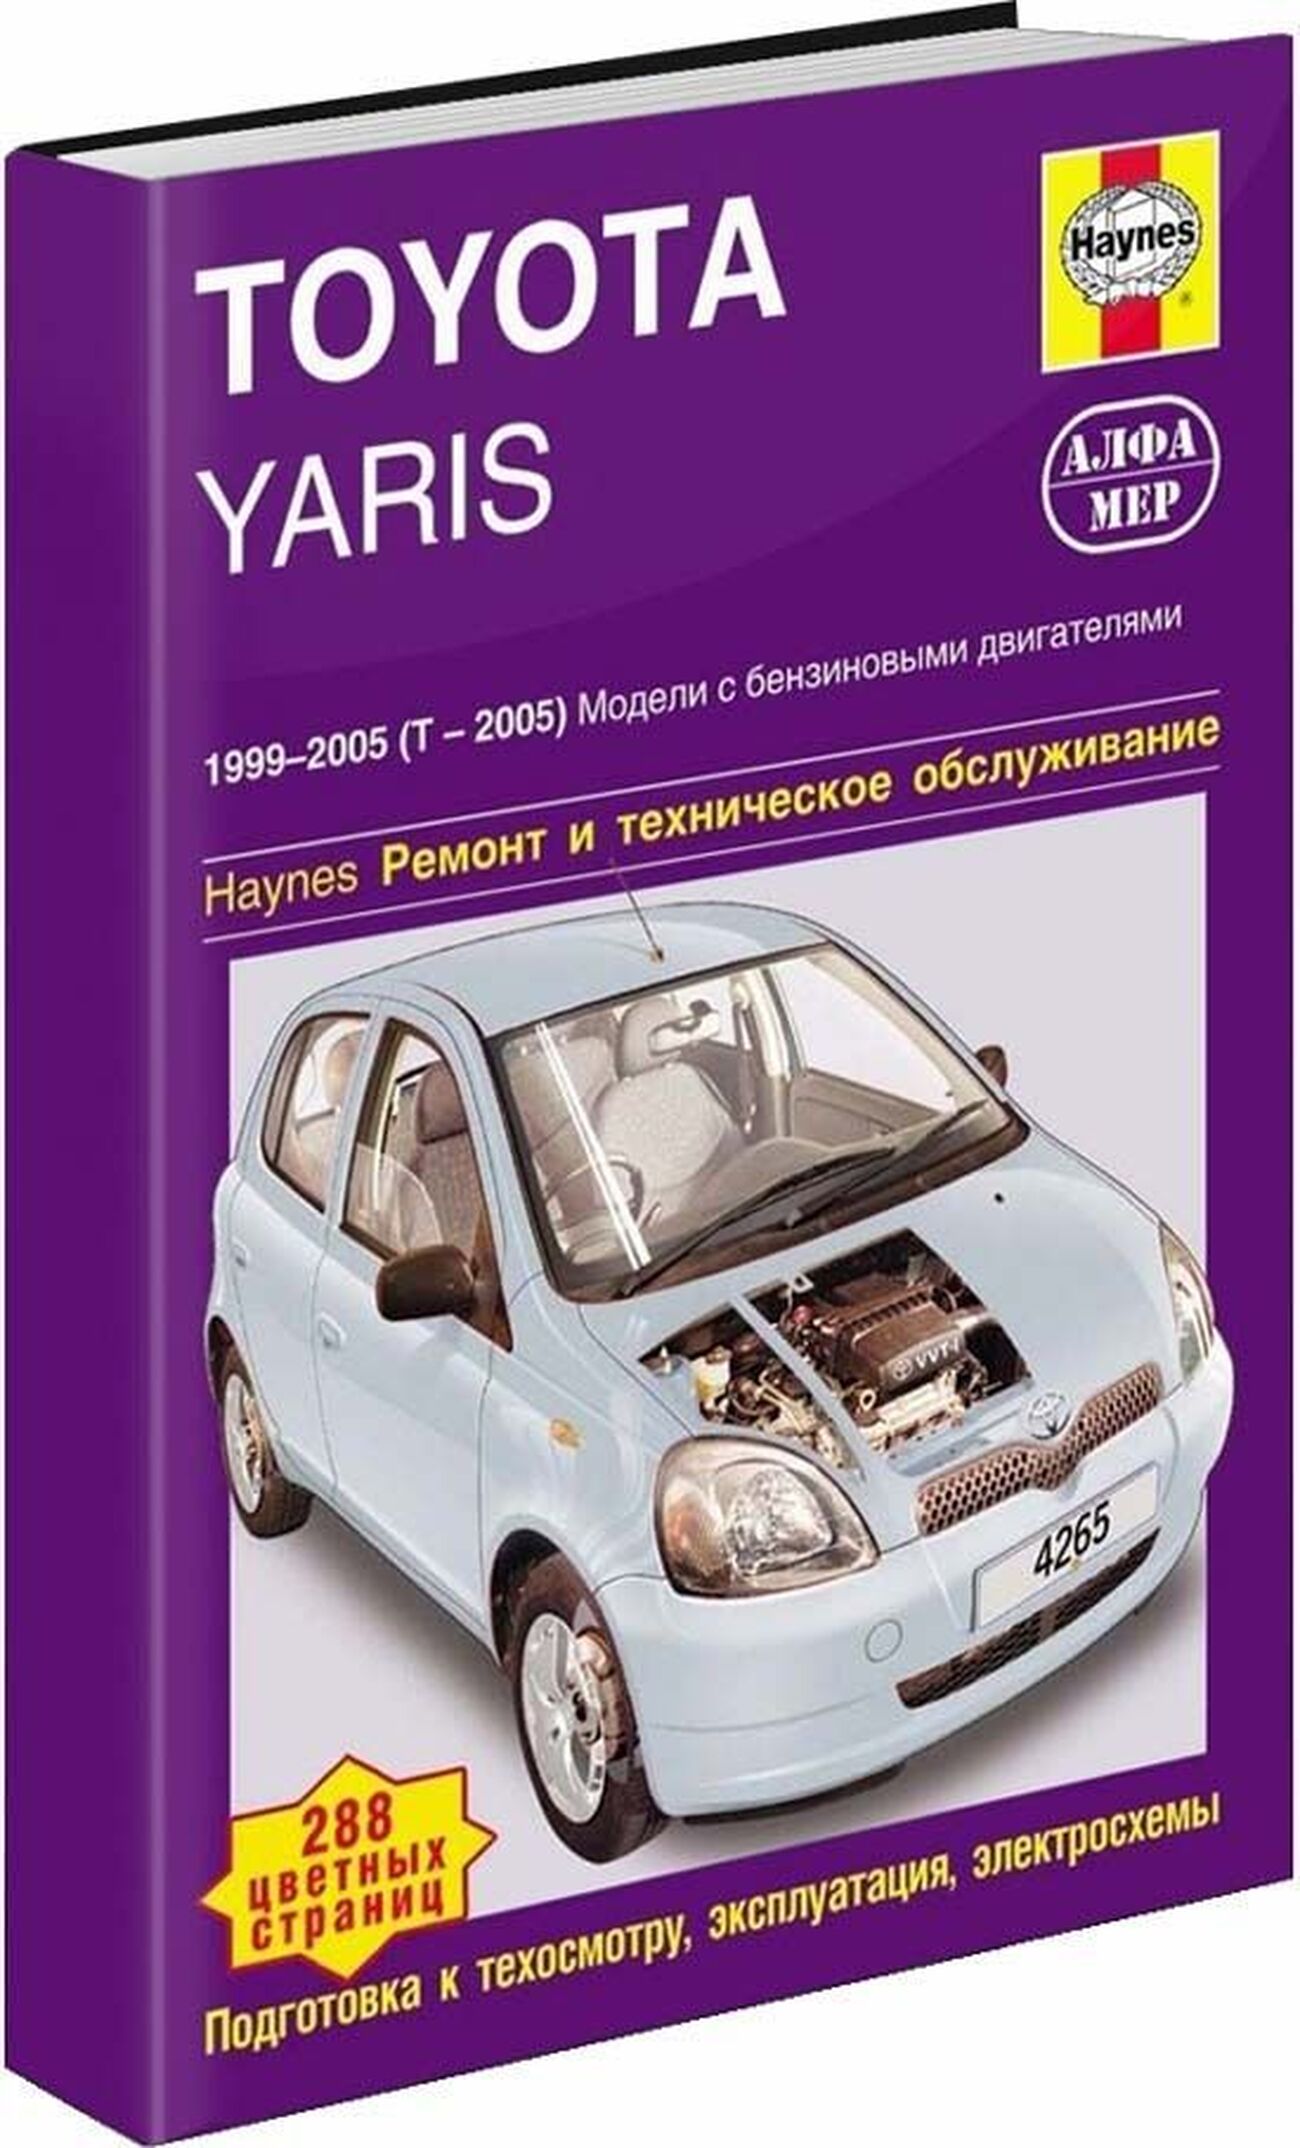 Книга: TOYOTA YARIS (б) 1999-2005 (T-2005) г.в., рем., экспл., то | Алфамер Паблишинг